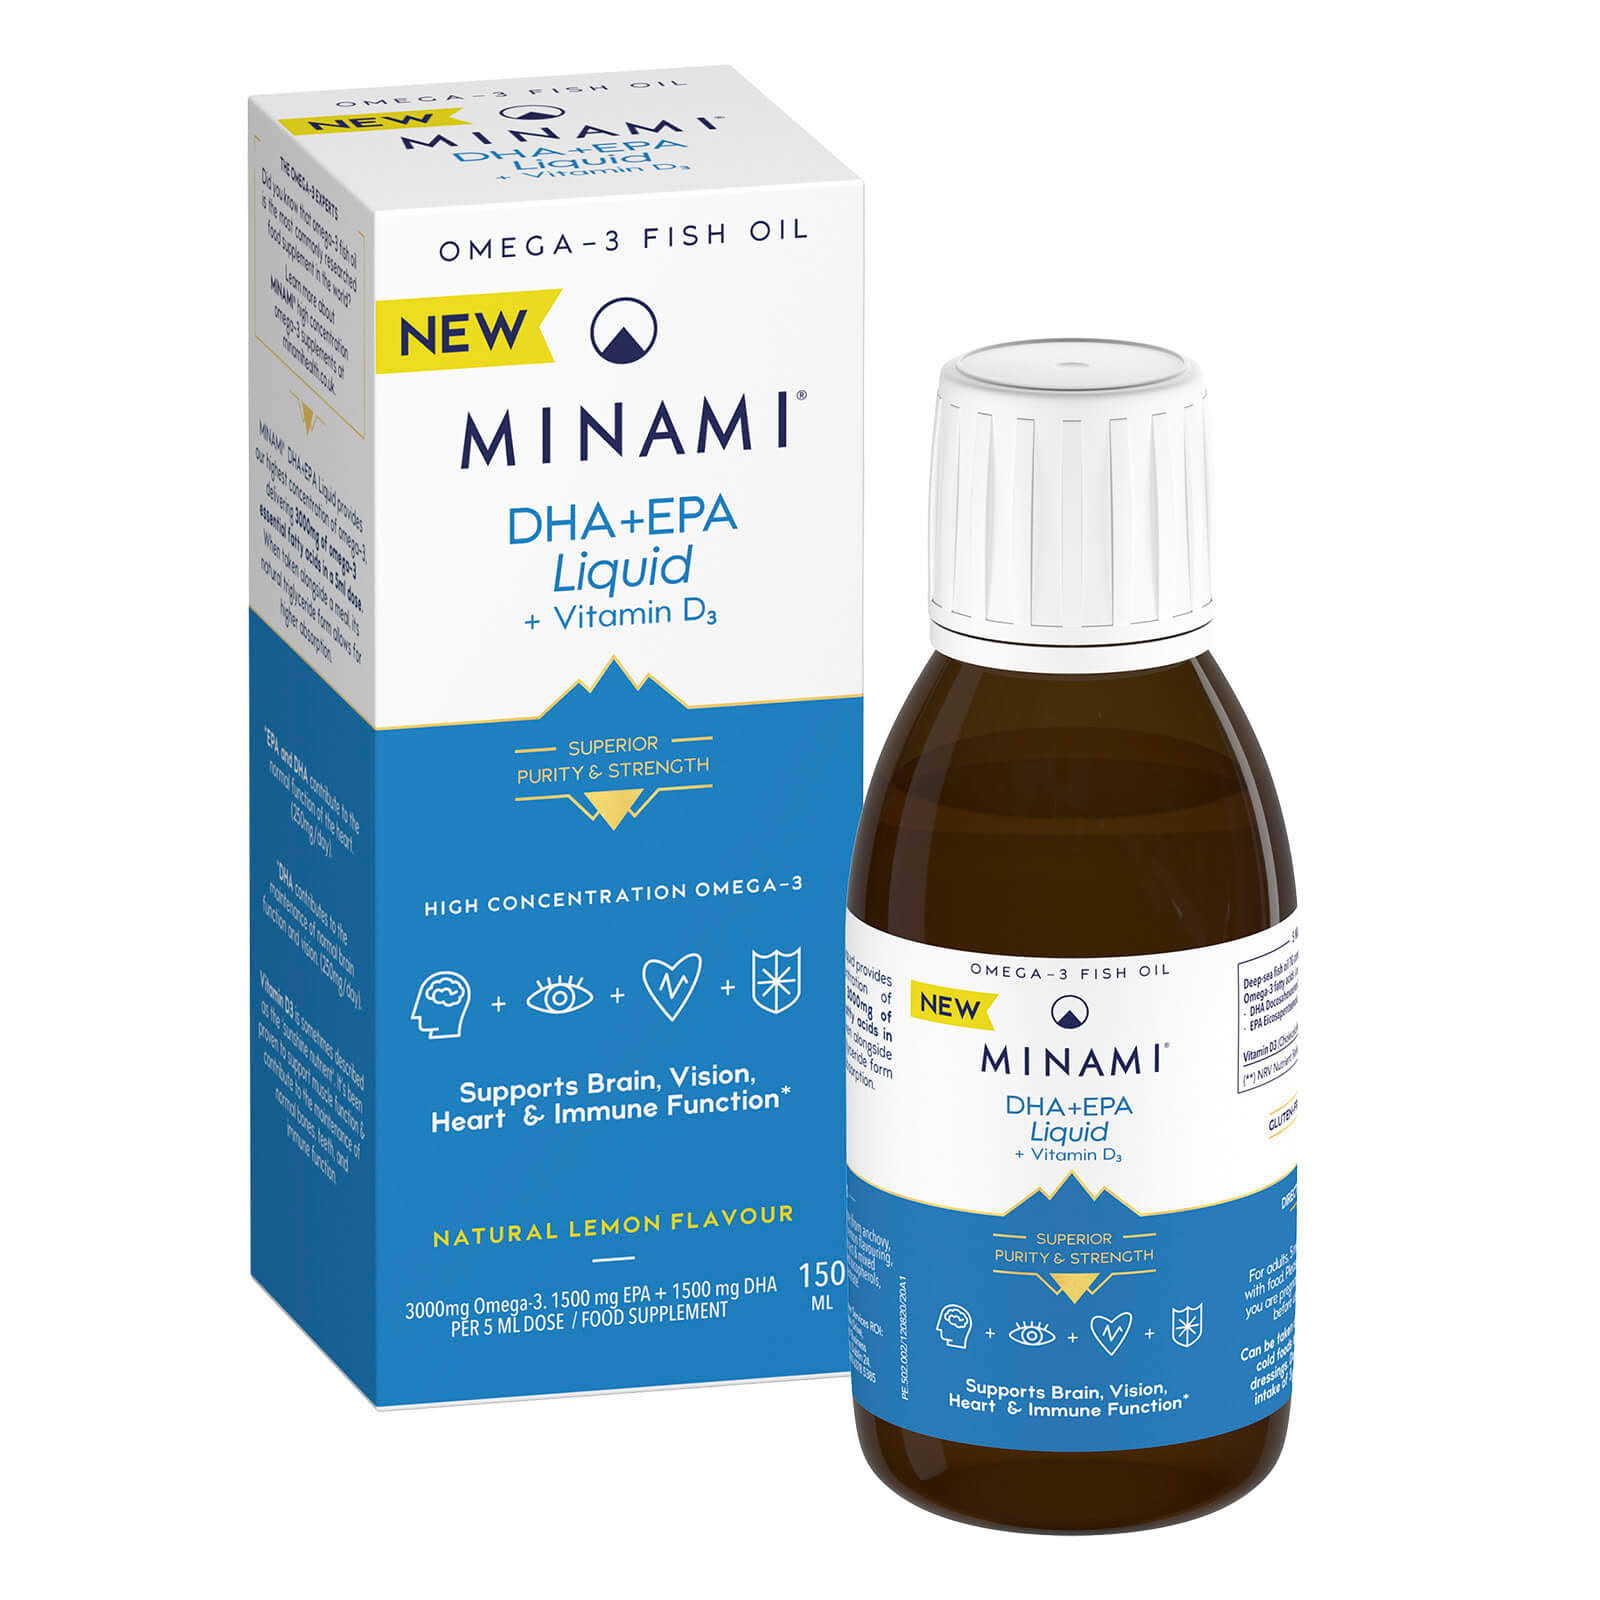 Minami DHA+EPA Liquid + Vitamin D3 - 150ml